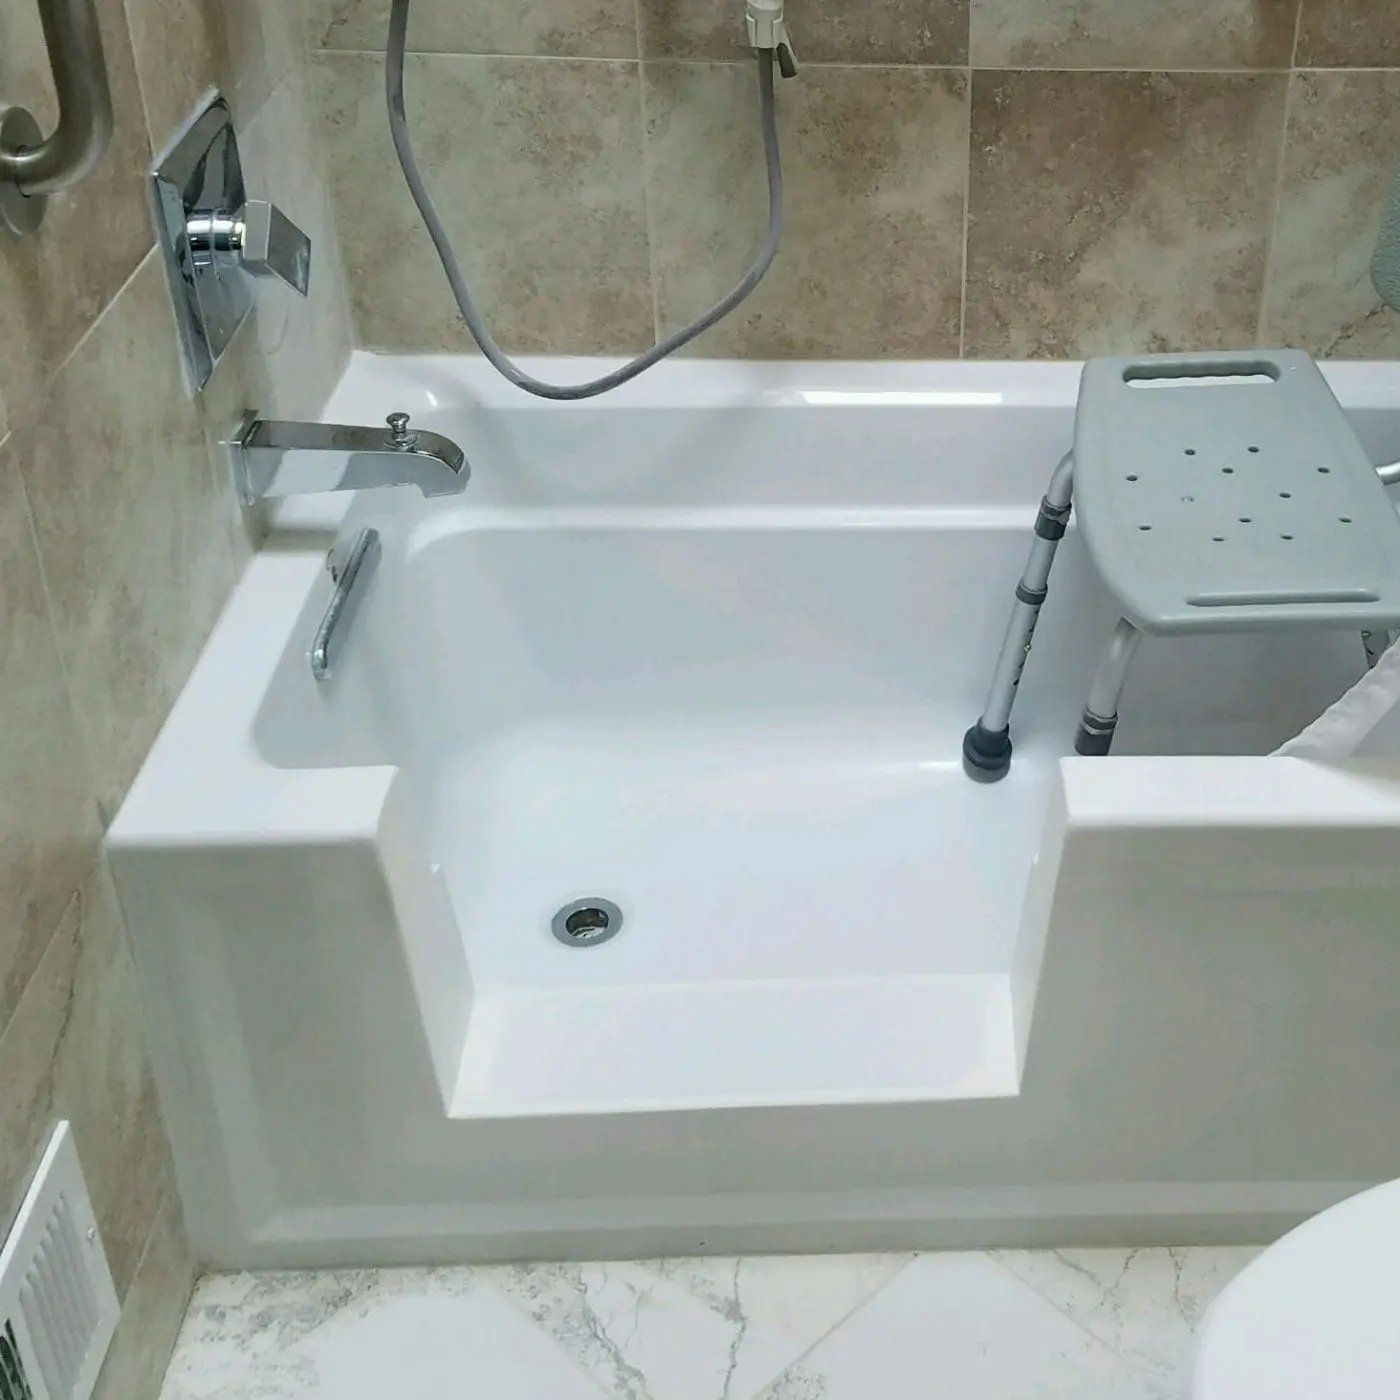 A Bathtub with Tub Cut